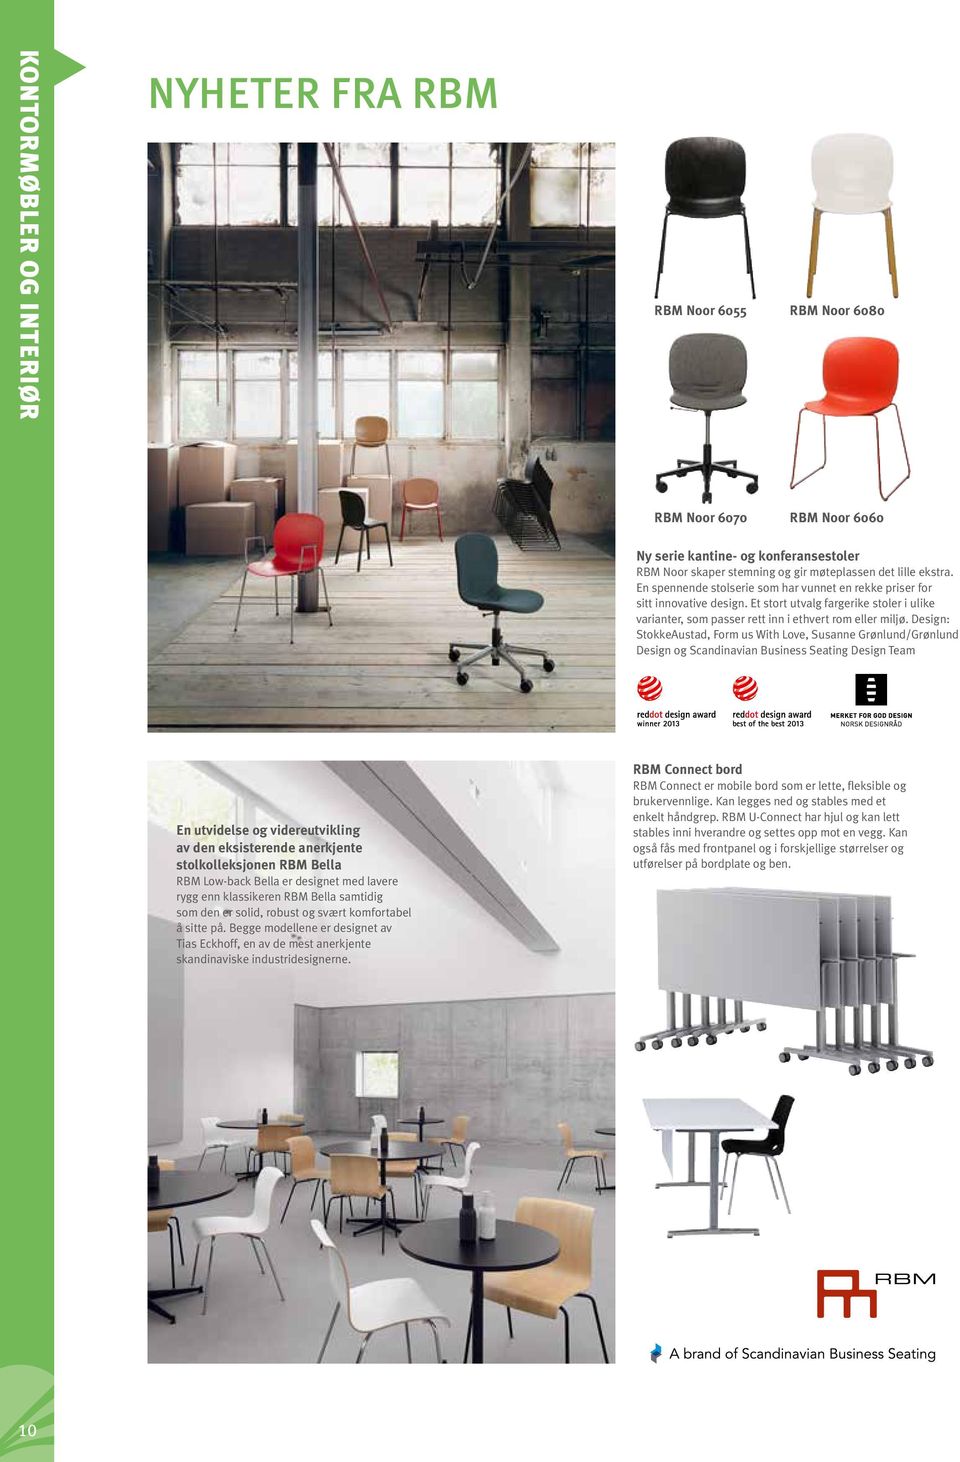 Design: StokkeAustad, Form us With Love, Susanne Grønlund/Grønlund Design og Scandinavian Business Seating Design Team En utvidelse og videreutvikling av den eksisterende anerkjente stolkolleksjonen